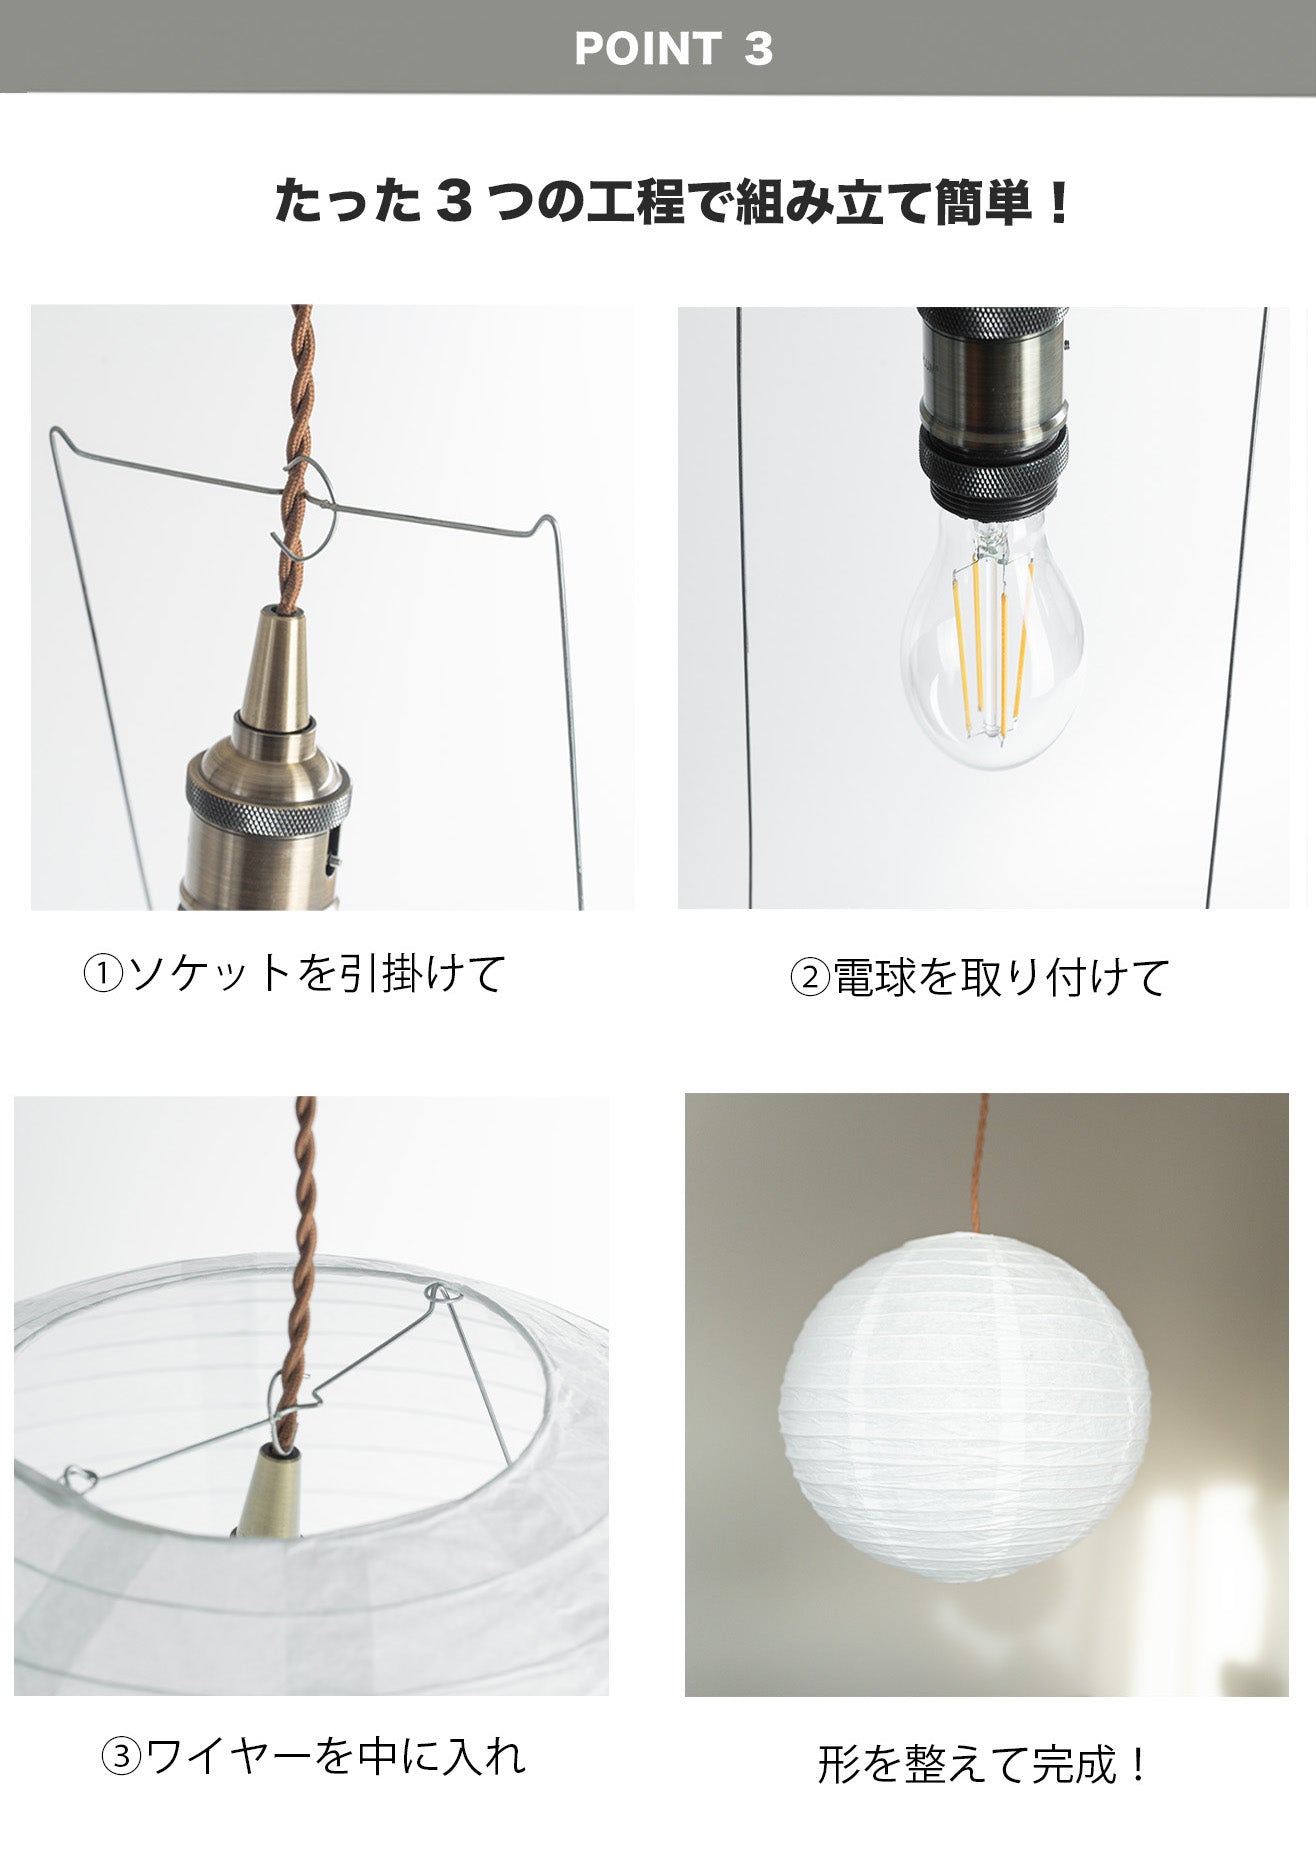 特価商品 フロアランプ 丸型 30cm LED電球付き - ライト・照明